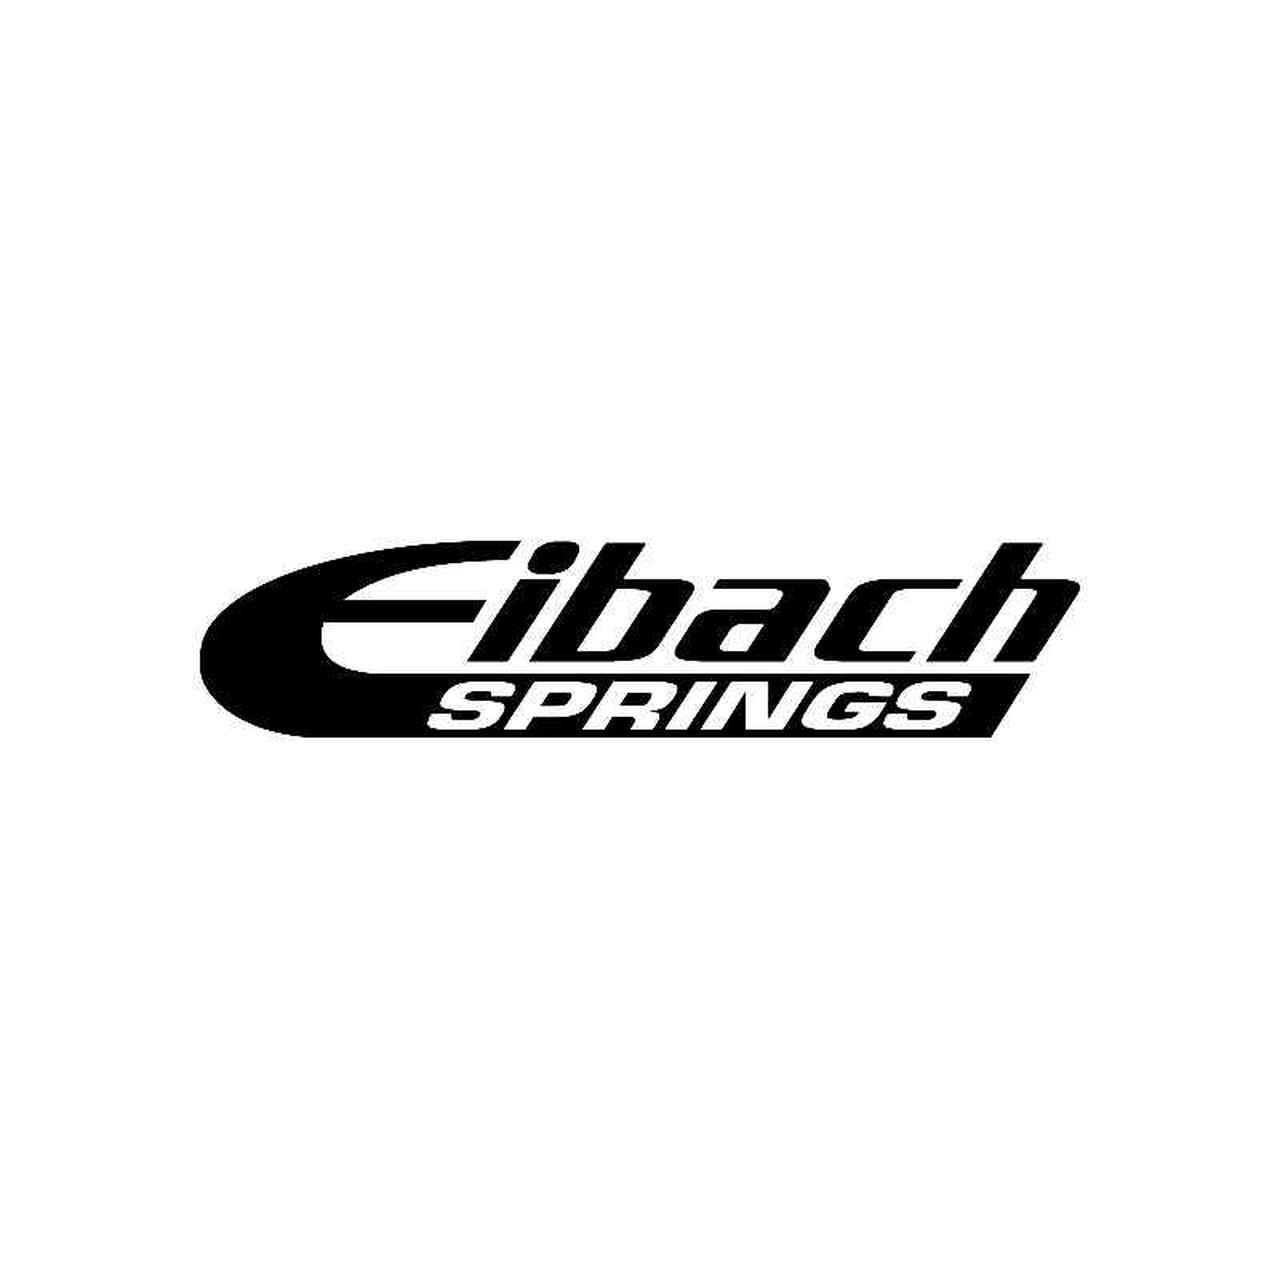 Eibach Logo - Eibach Springs Logo Jdm Decal